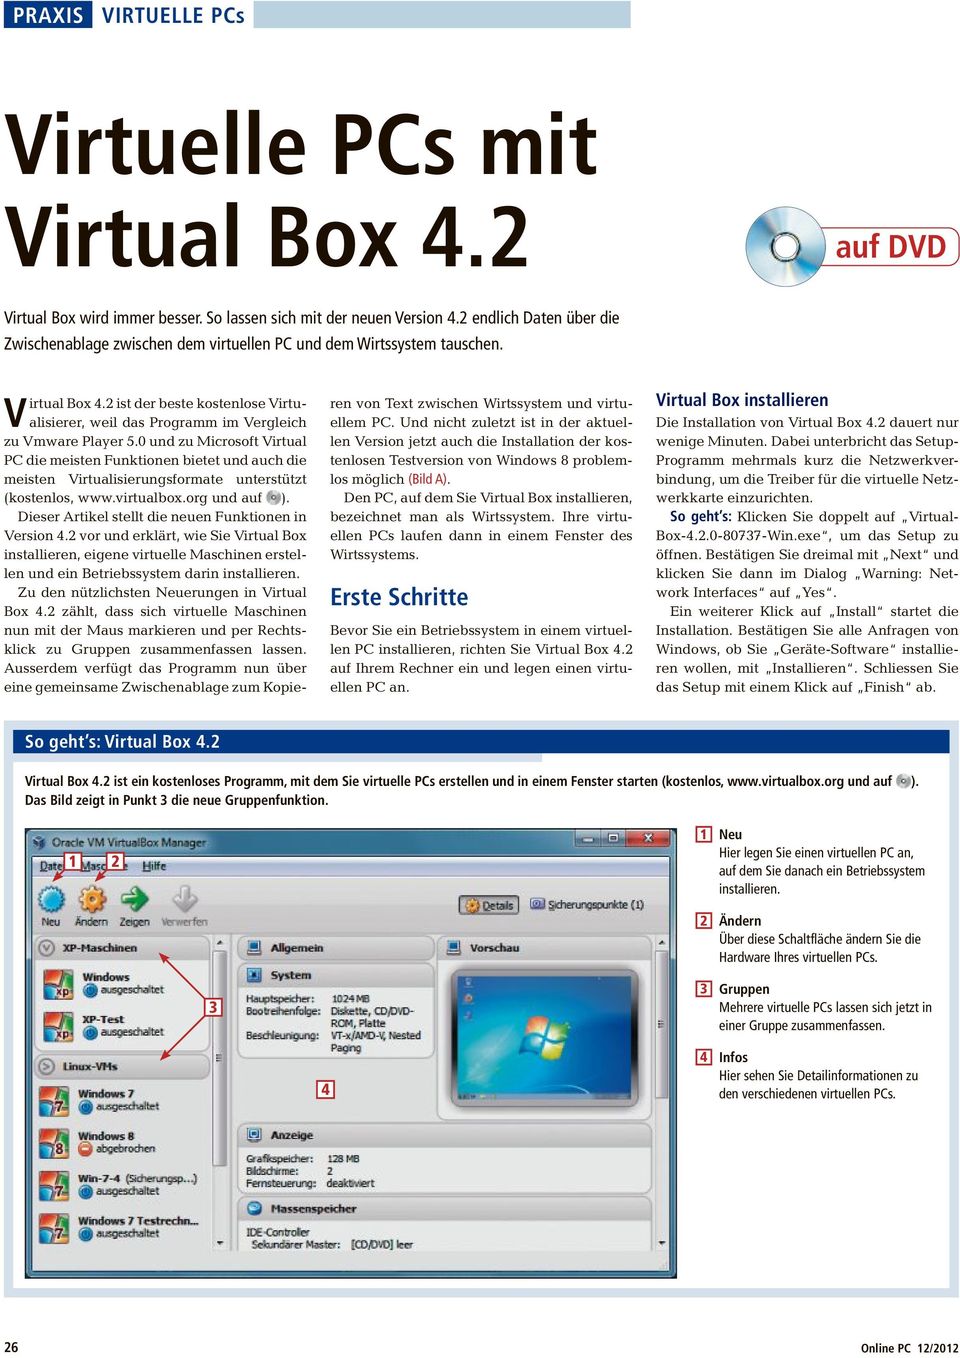 2 ist der beste kostenlose Virtualisierer, weil das Programm im Vergleich zu Vmware Player 5.